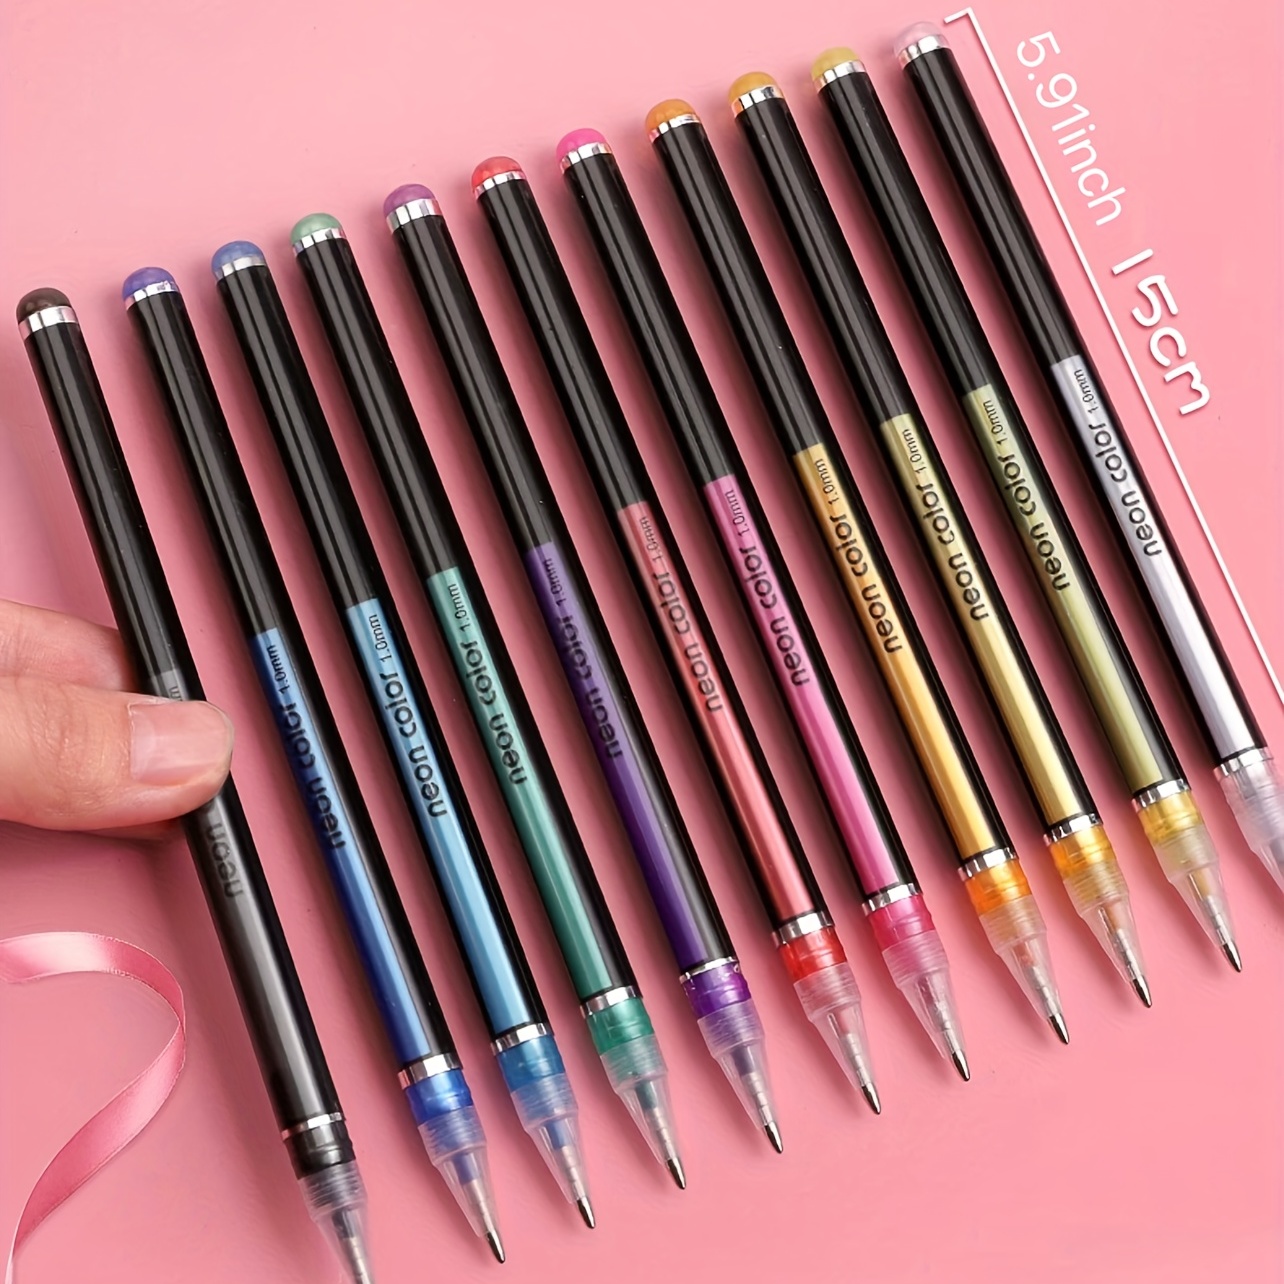 Zuixua Color Gel Pen, School Supplies Pens, Metal Coloring Books